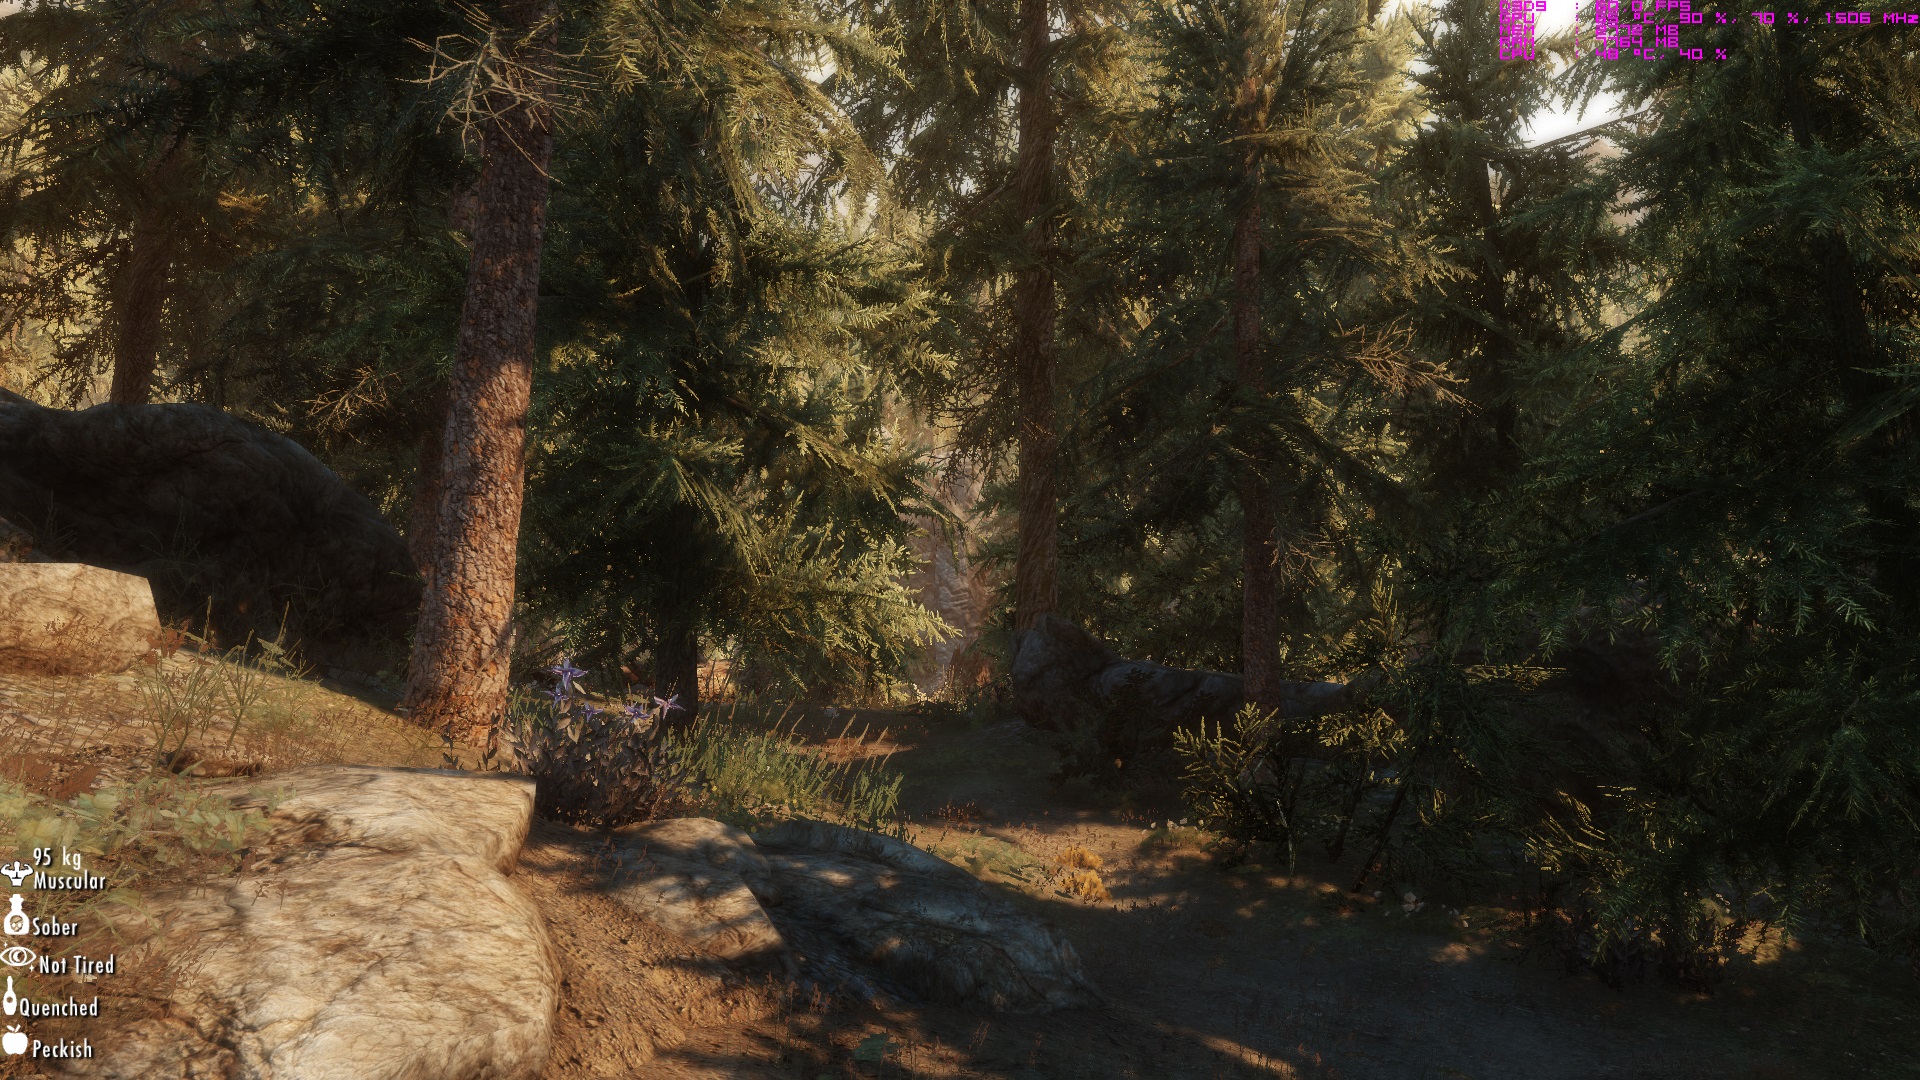 The Elder Scrolls V: Skyrim için yüksek kalitede 3D ağaç modellemeleri içeren mod geldi